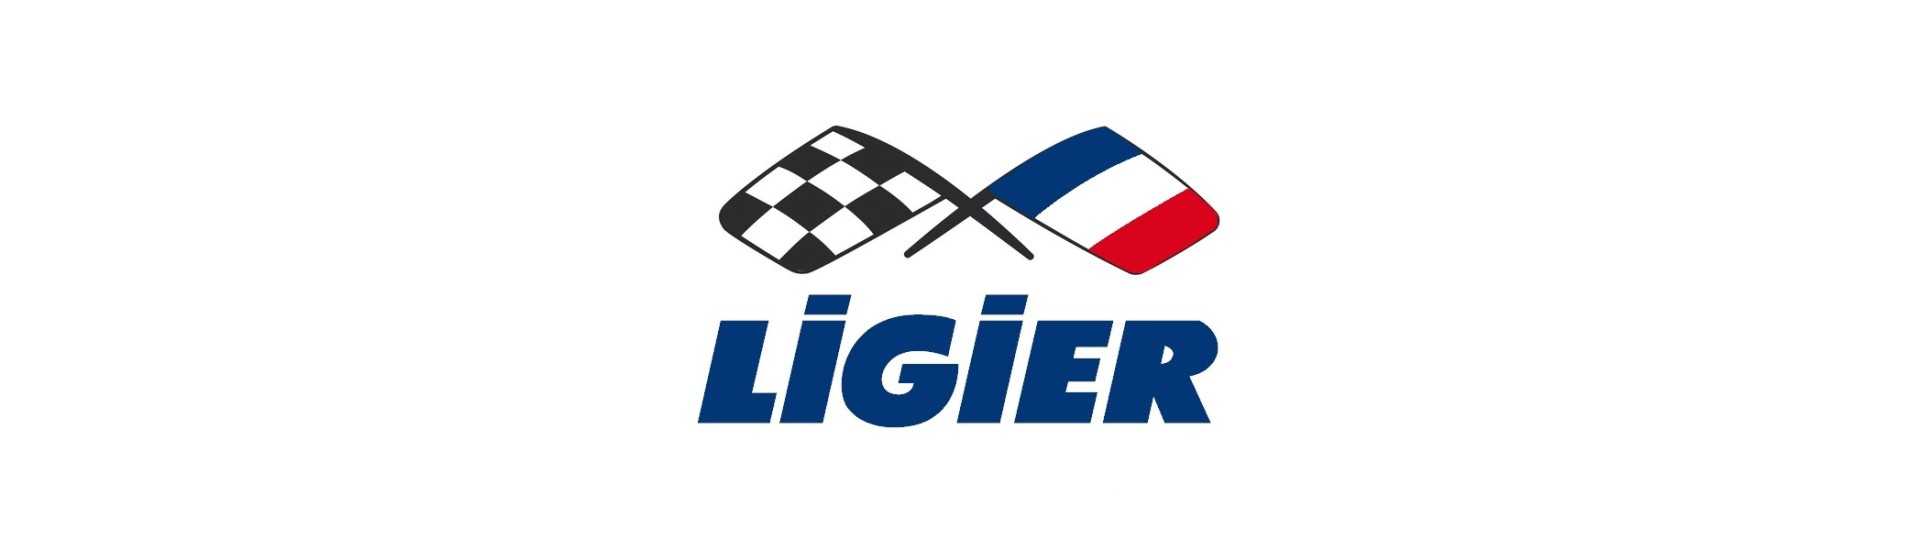 Panel de puerta interior al mejor precio coche sin permiso Ligier